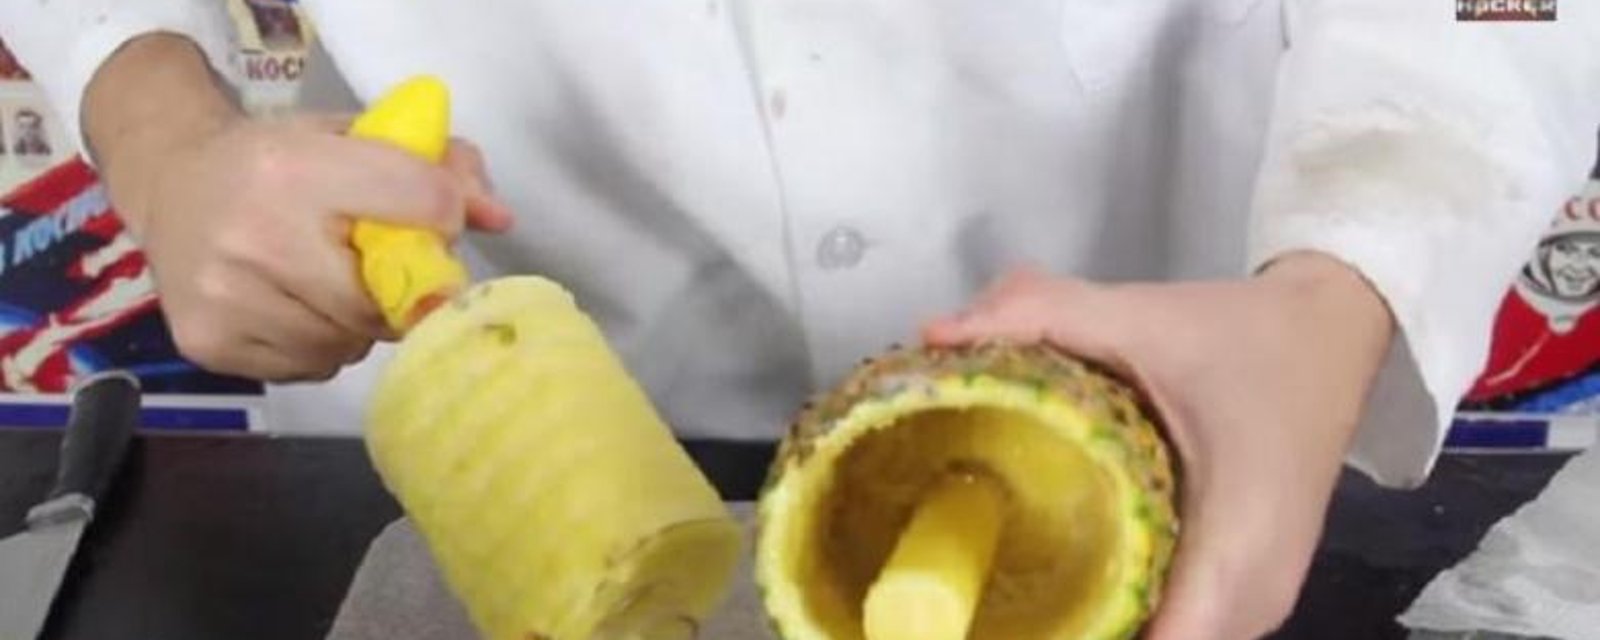 3 façons de couper et de servir l'ananas! Tuto vidéo